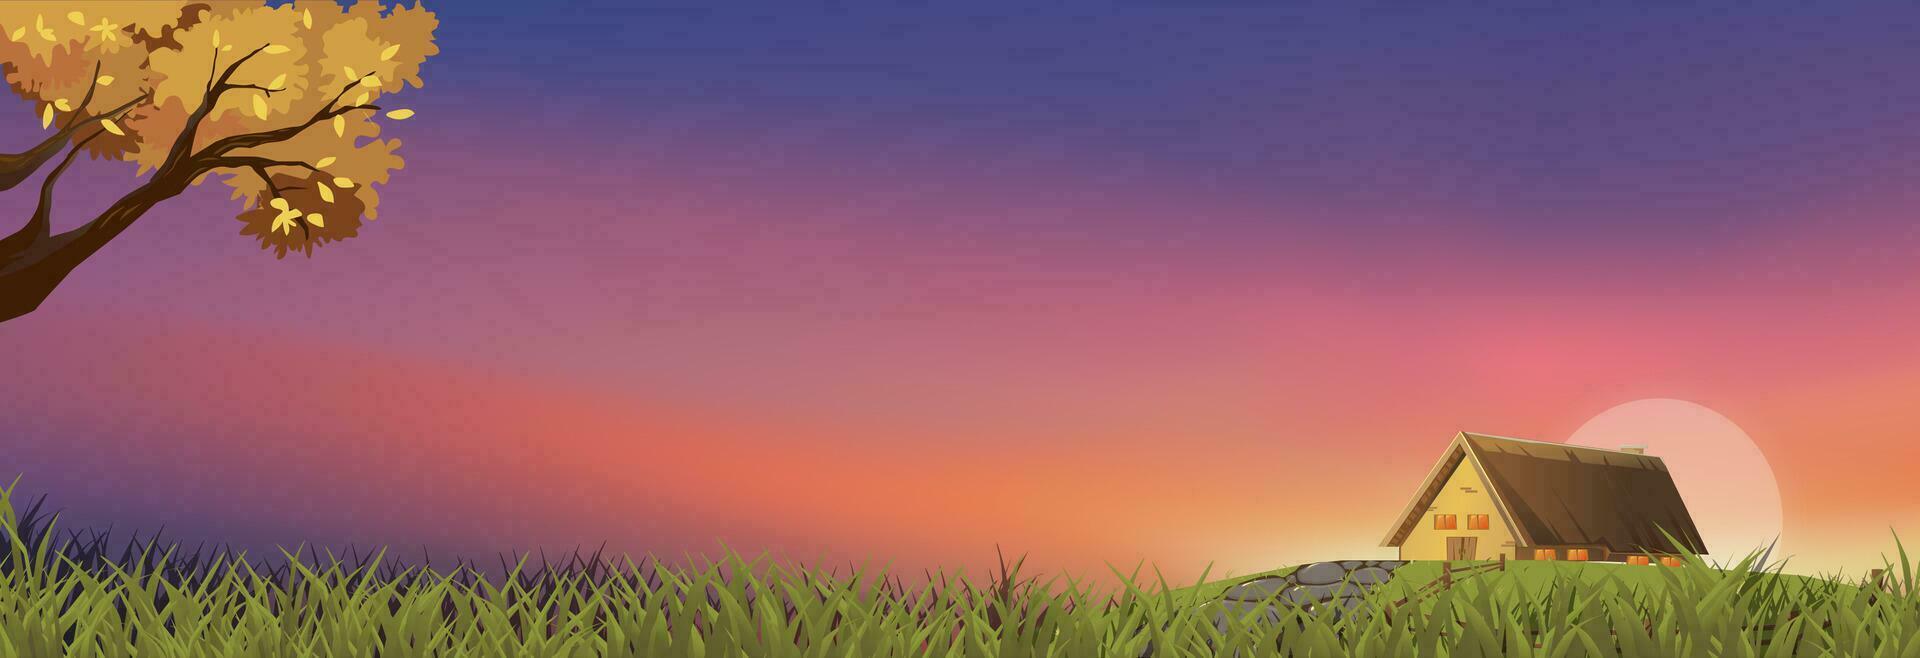 Frühling Landschaft Sonnenuntergang Himmel Hintergrund, Vektor Karikatur Dorf Morgen Sonnenaufgang Über Bauernhof Haus, Gras Feld und Baum, Horizont Natur ländlich Szene Landschaft im Sommer-